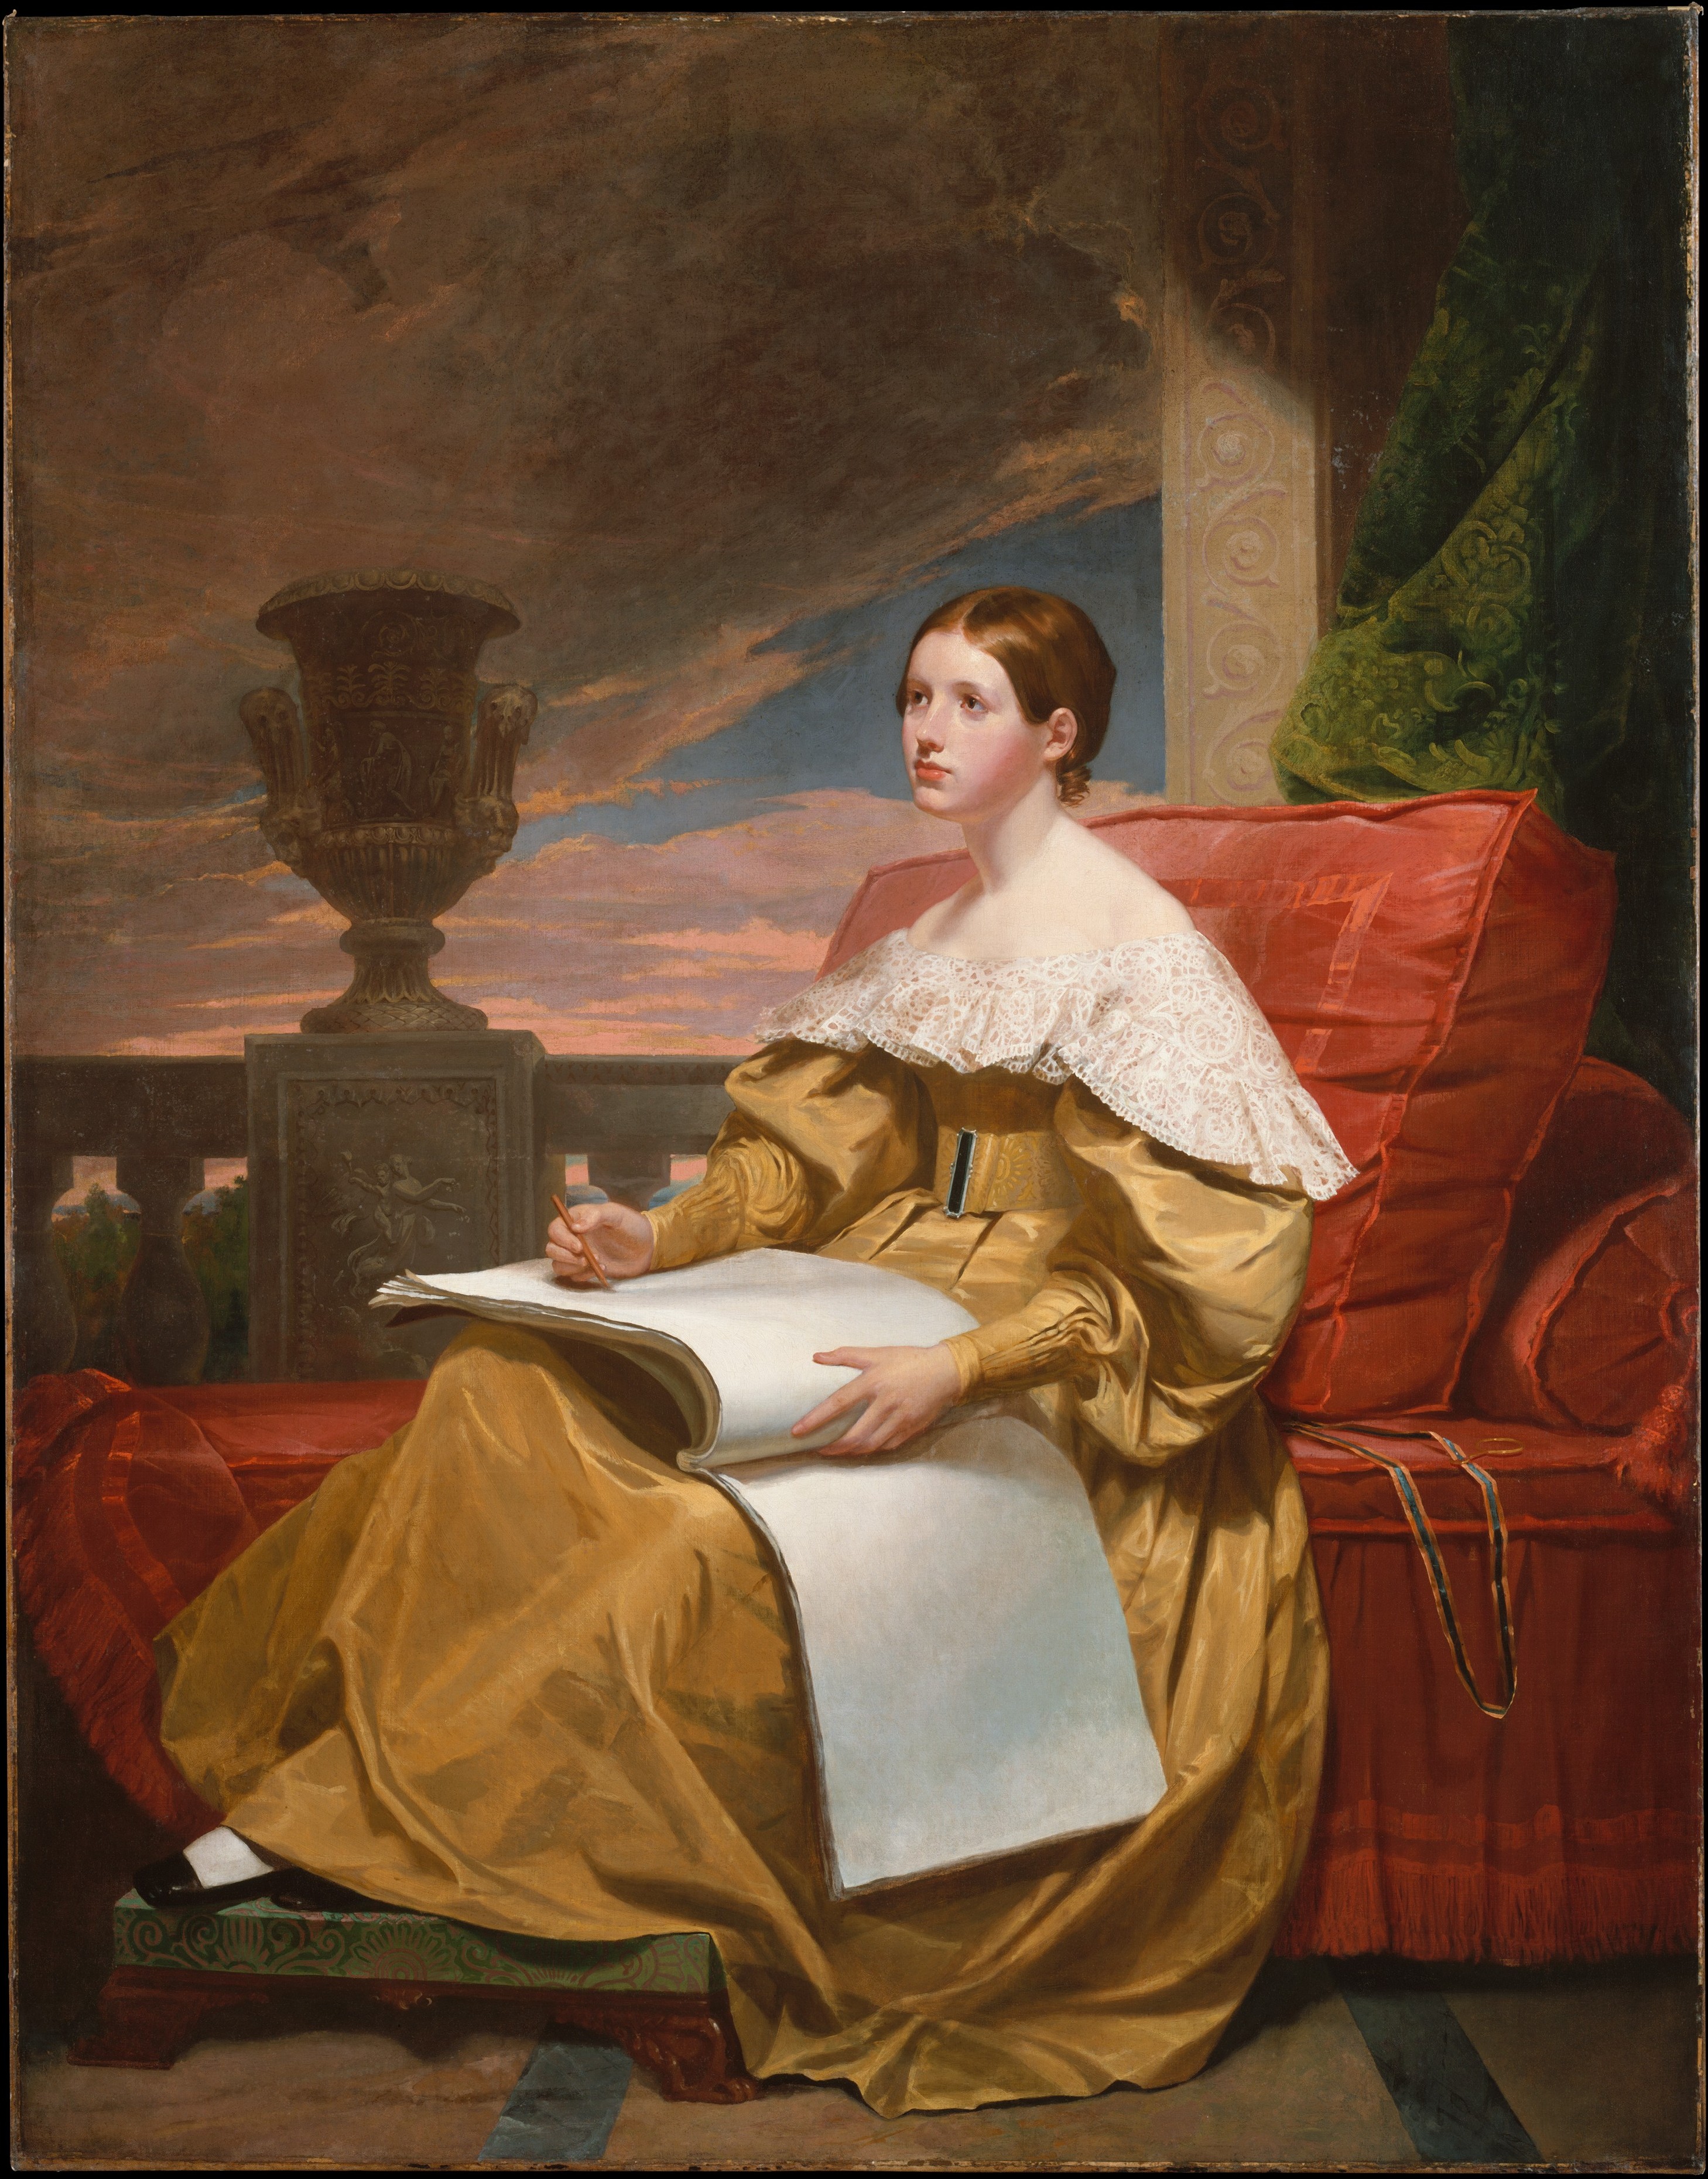 Susan Walker Morse (De Muze) by Samuel F. B. Morse - c. 1836-37 - 187.3 x 146.4 cm 